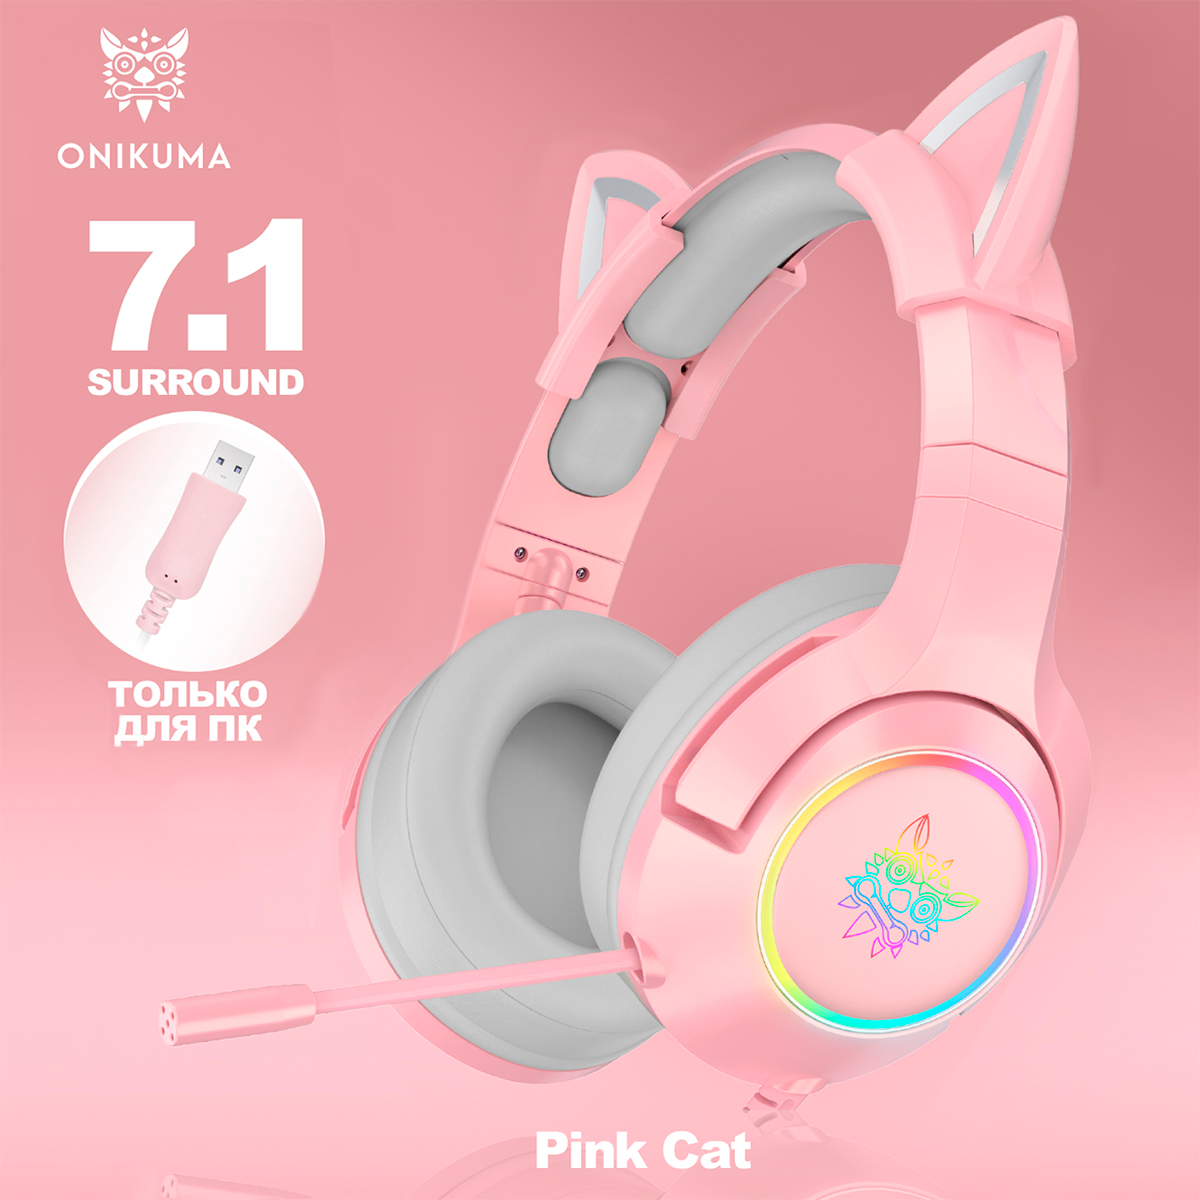 Игровые наушники Onikuma K9-7.1 Pink Cat розовые с кошачьими ушками и подсветкой